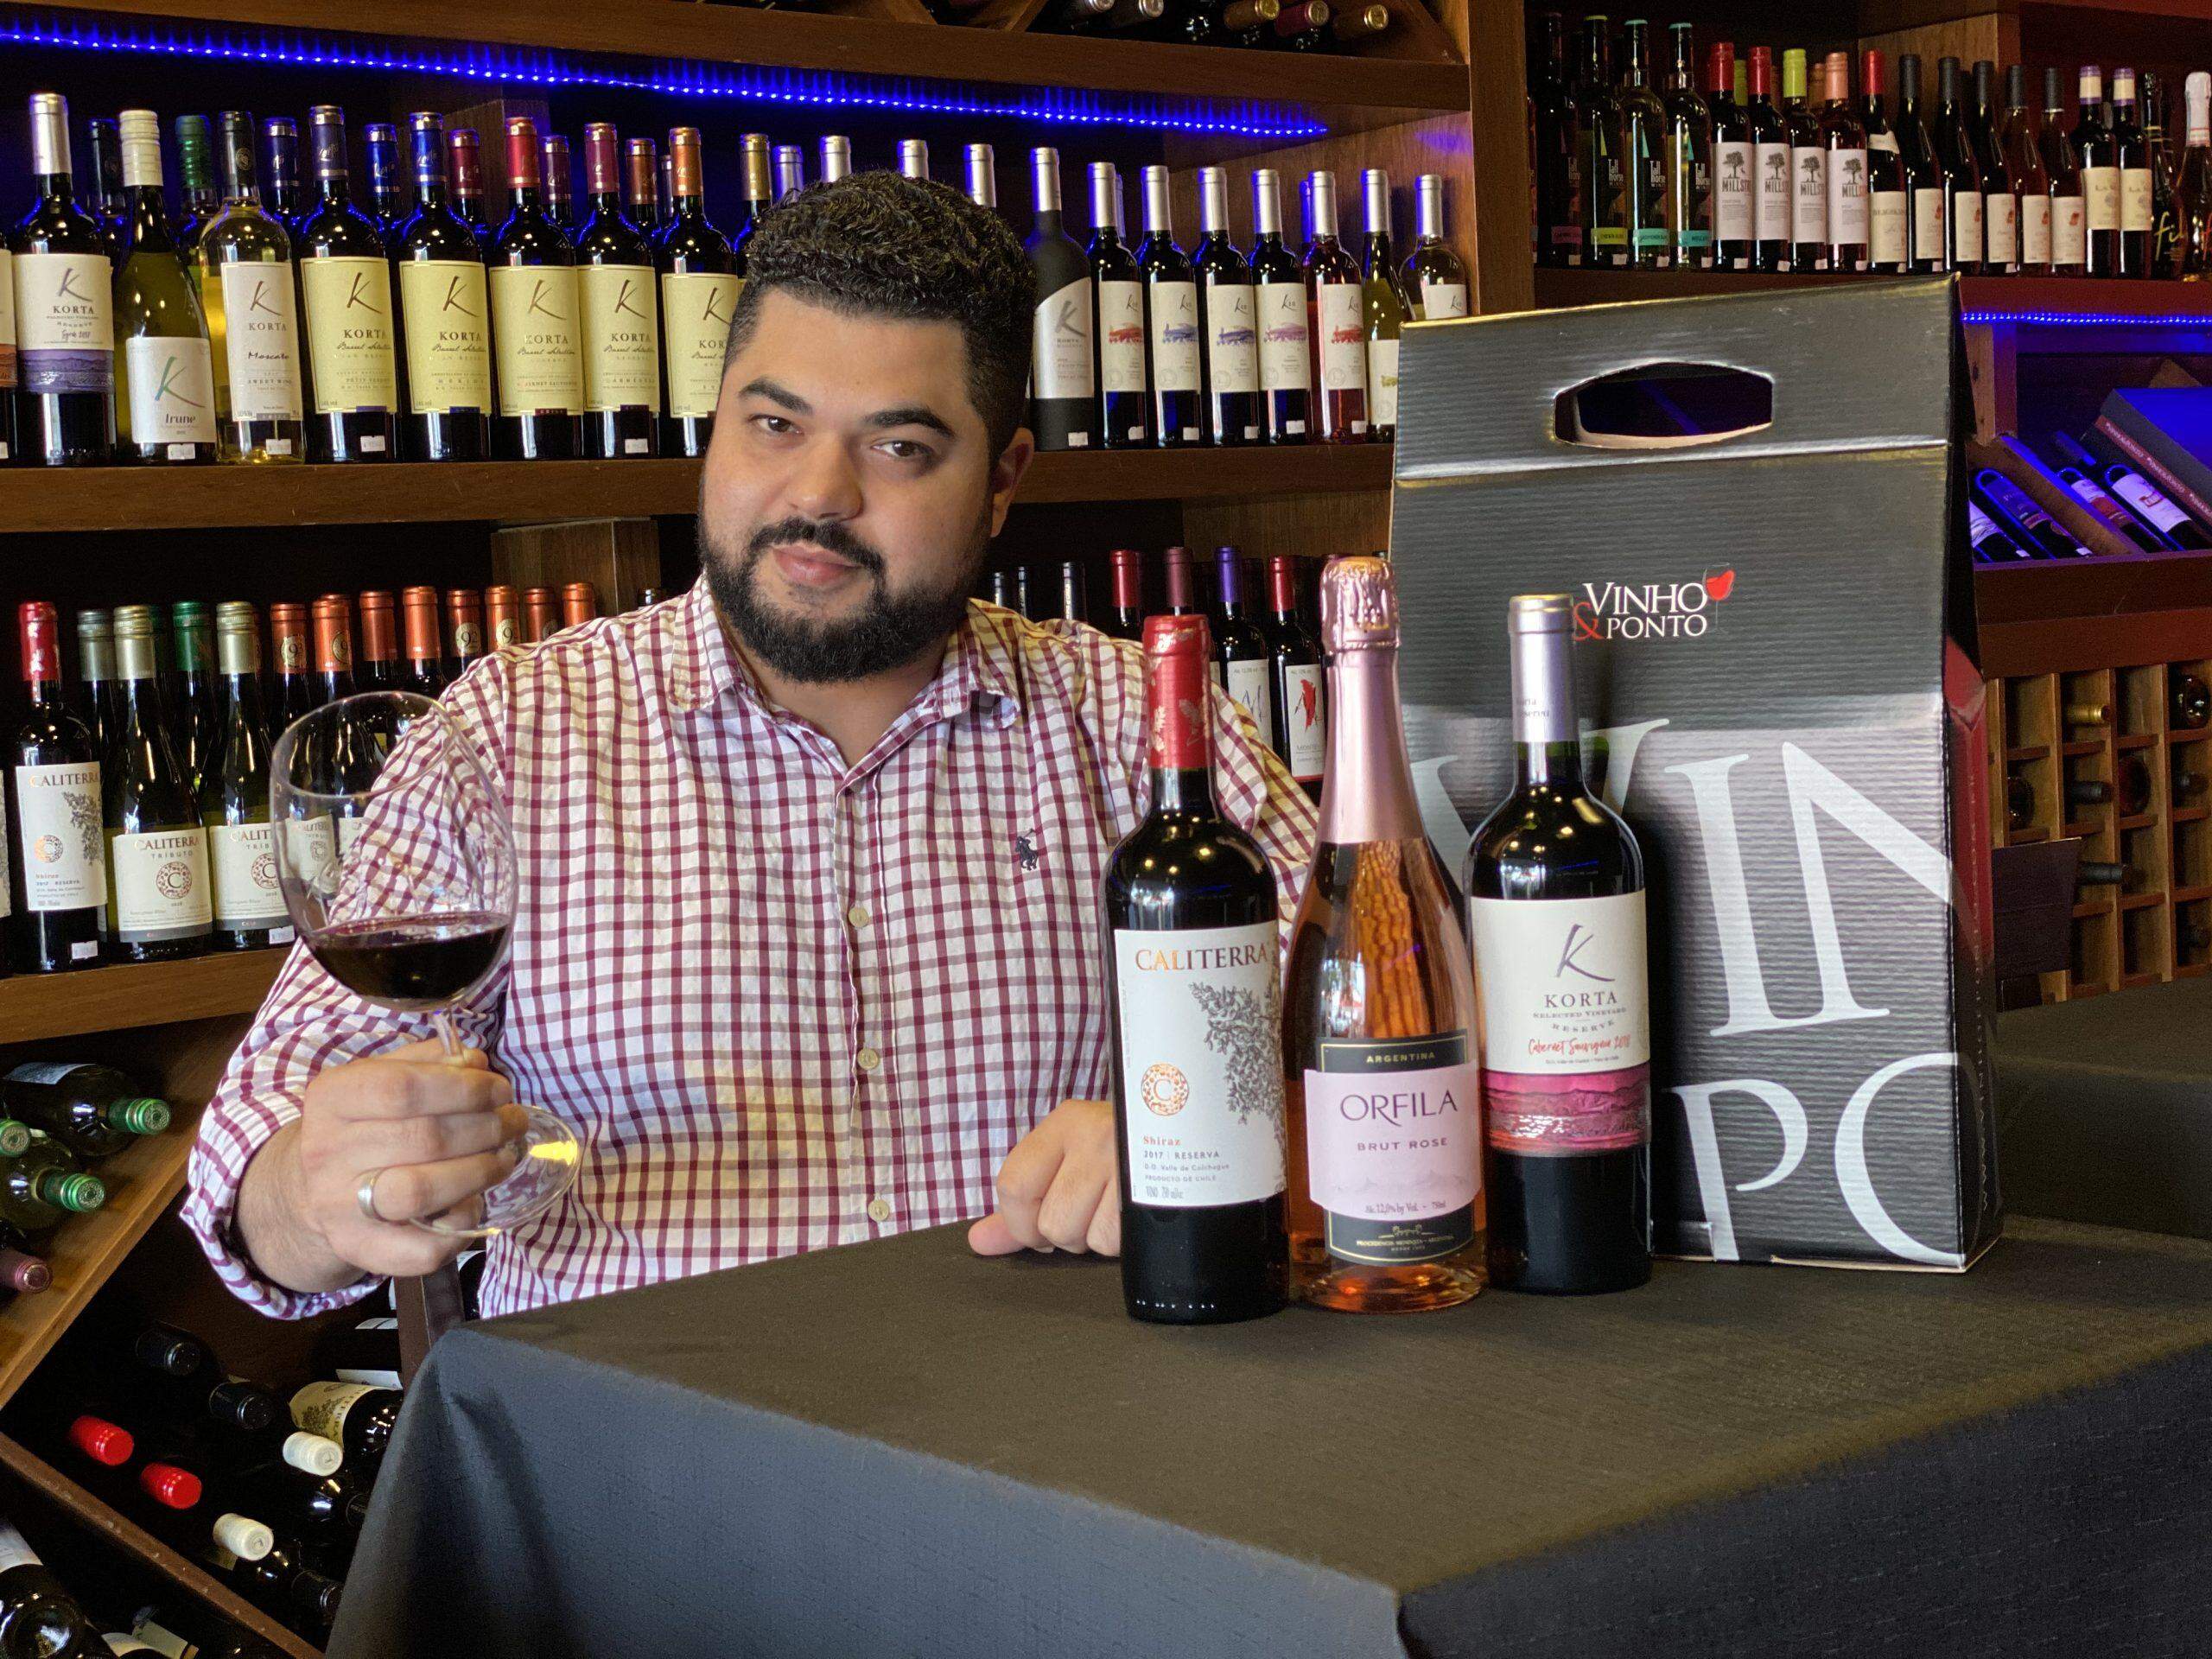 Black Friday Vinho & Ponto: 70% off na segunda garrafa, é pra zerar o estoque e encher sua adega